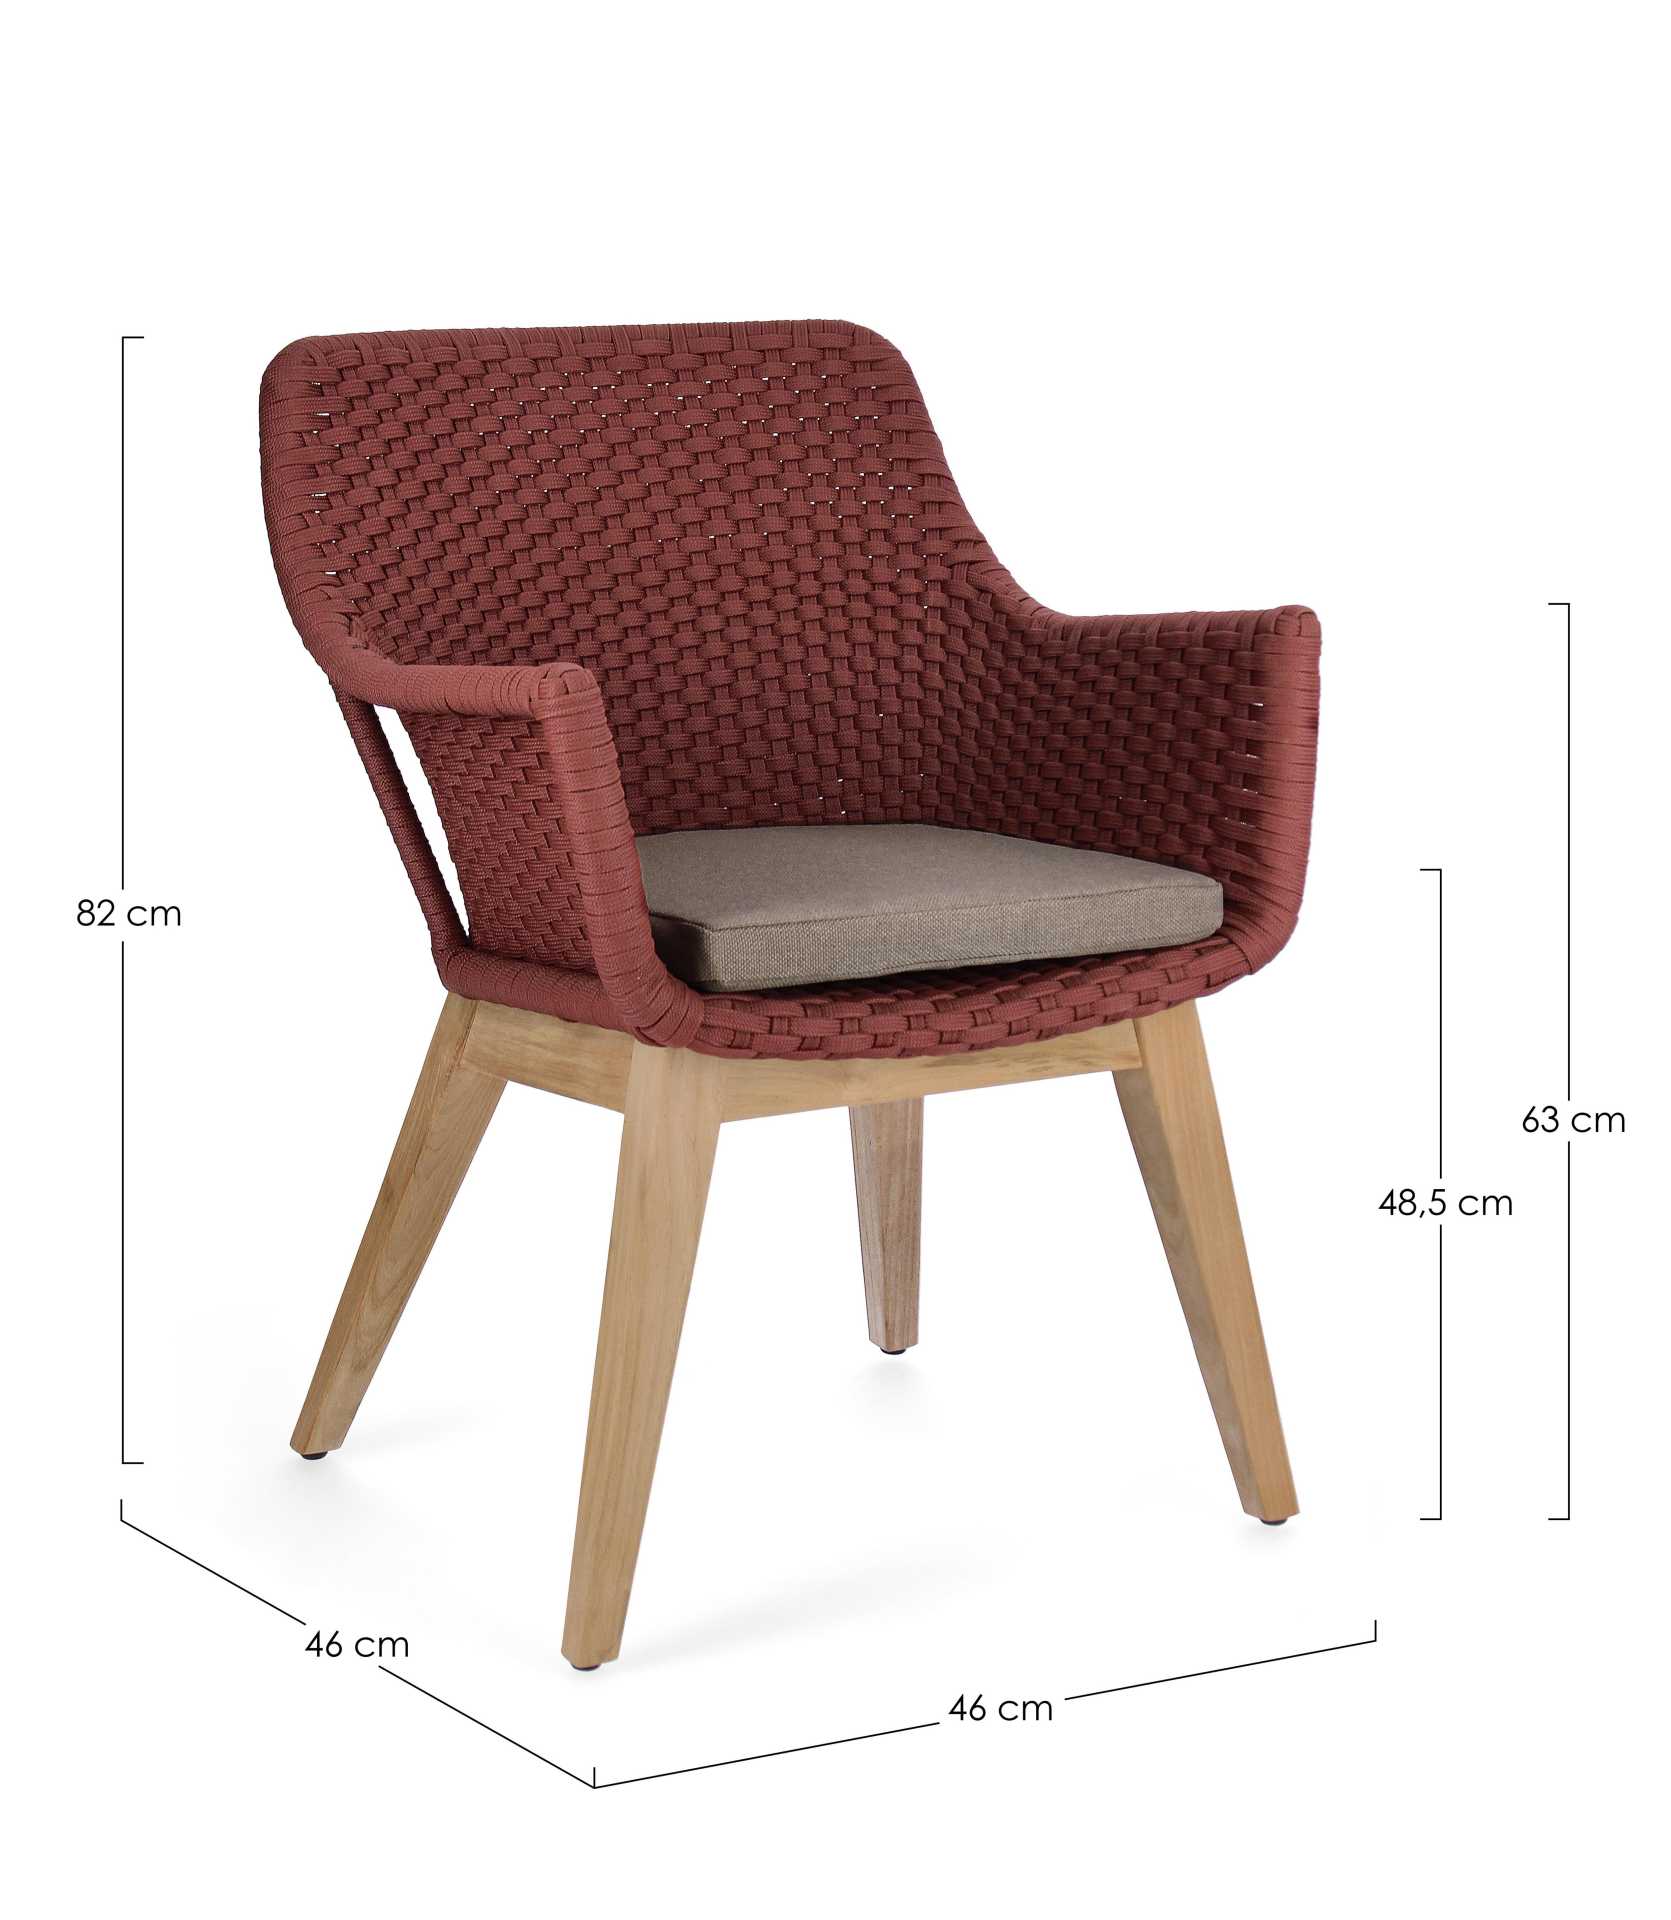 Der Gartenstuhl Allison überzeugt mit seinem modernen Design. Gefertigt wurde er aus Olefin-Stoff, welcher einen roten Farbton besitzt. Das Gestell ist aus Teakholz und hat eine natürliche Farbe. Der Stuhl verfügt über eine Sitzhöhe von 48 cm und ist für 